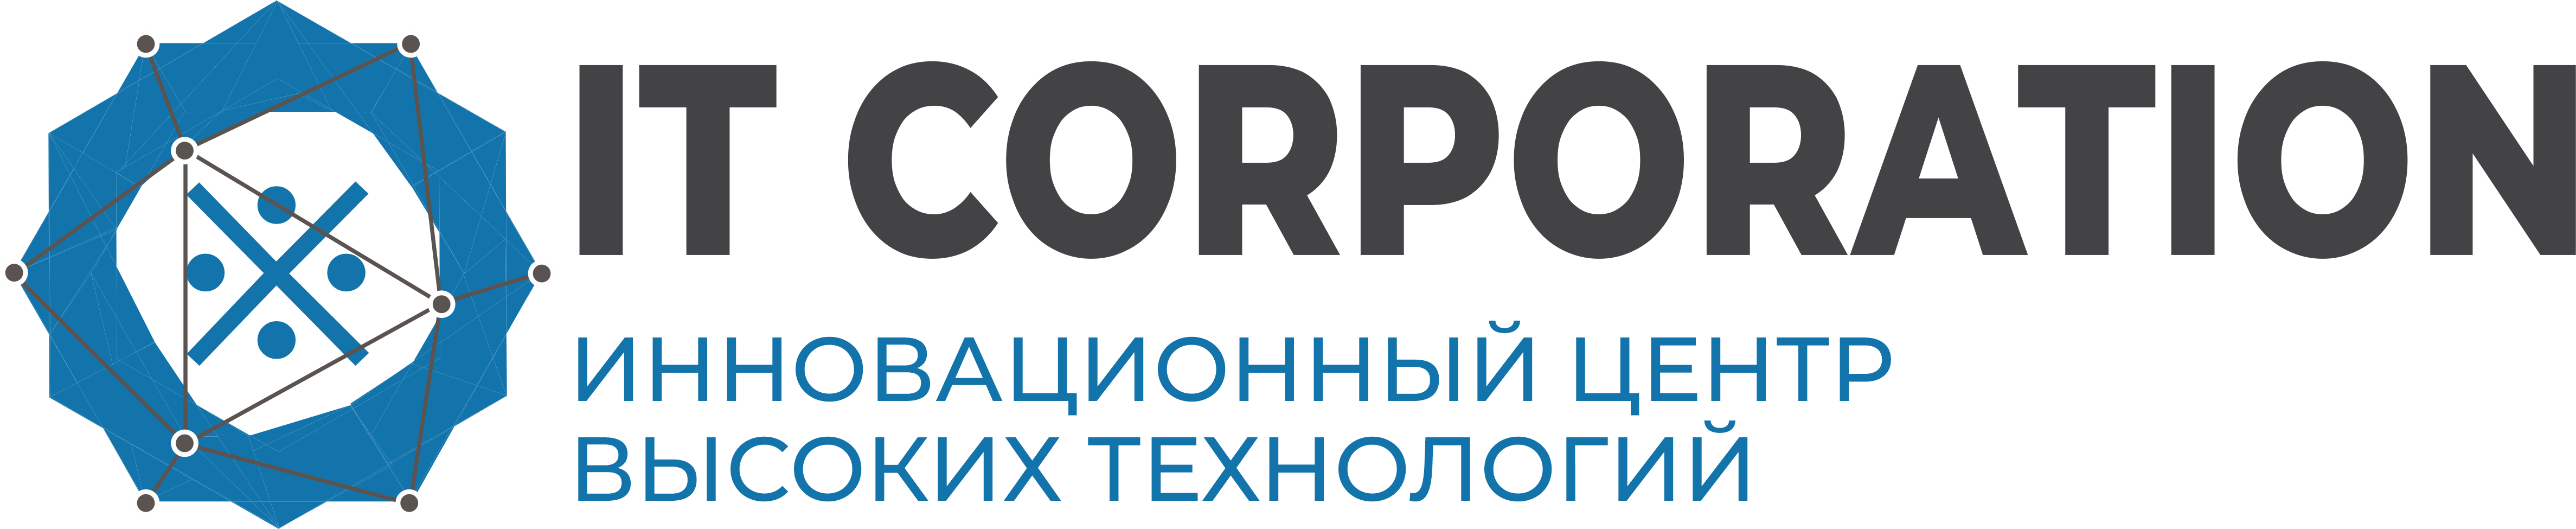 Логотип IT CORPORATION